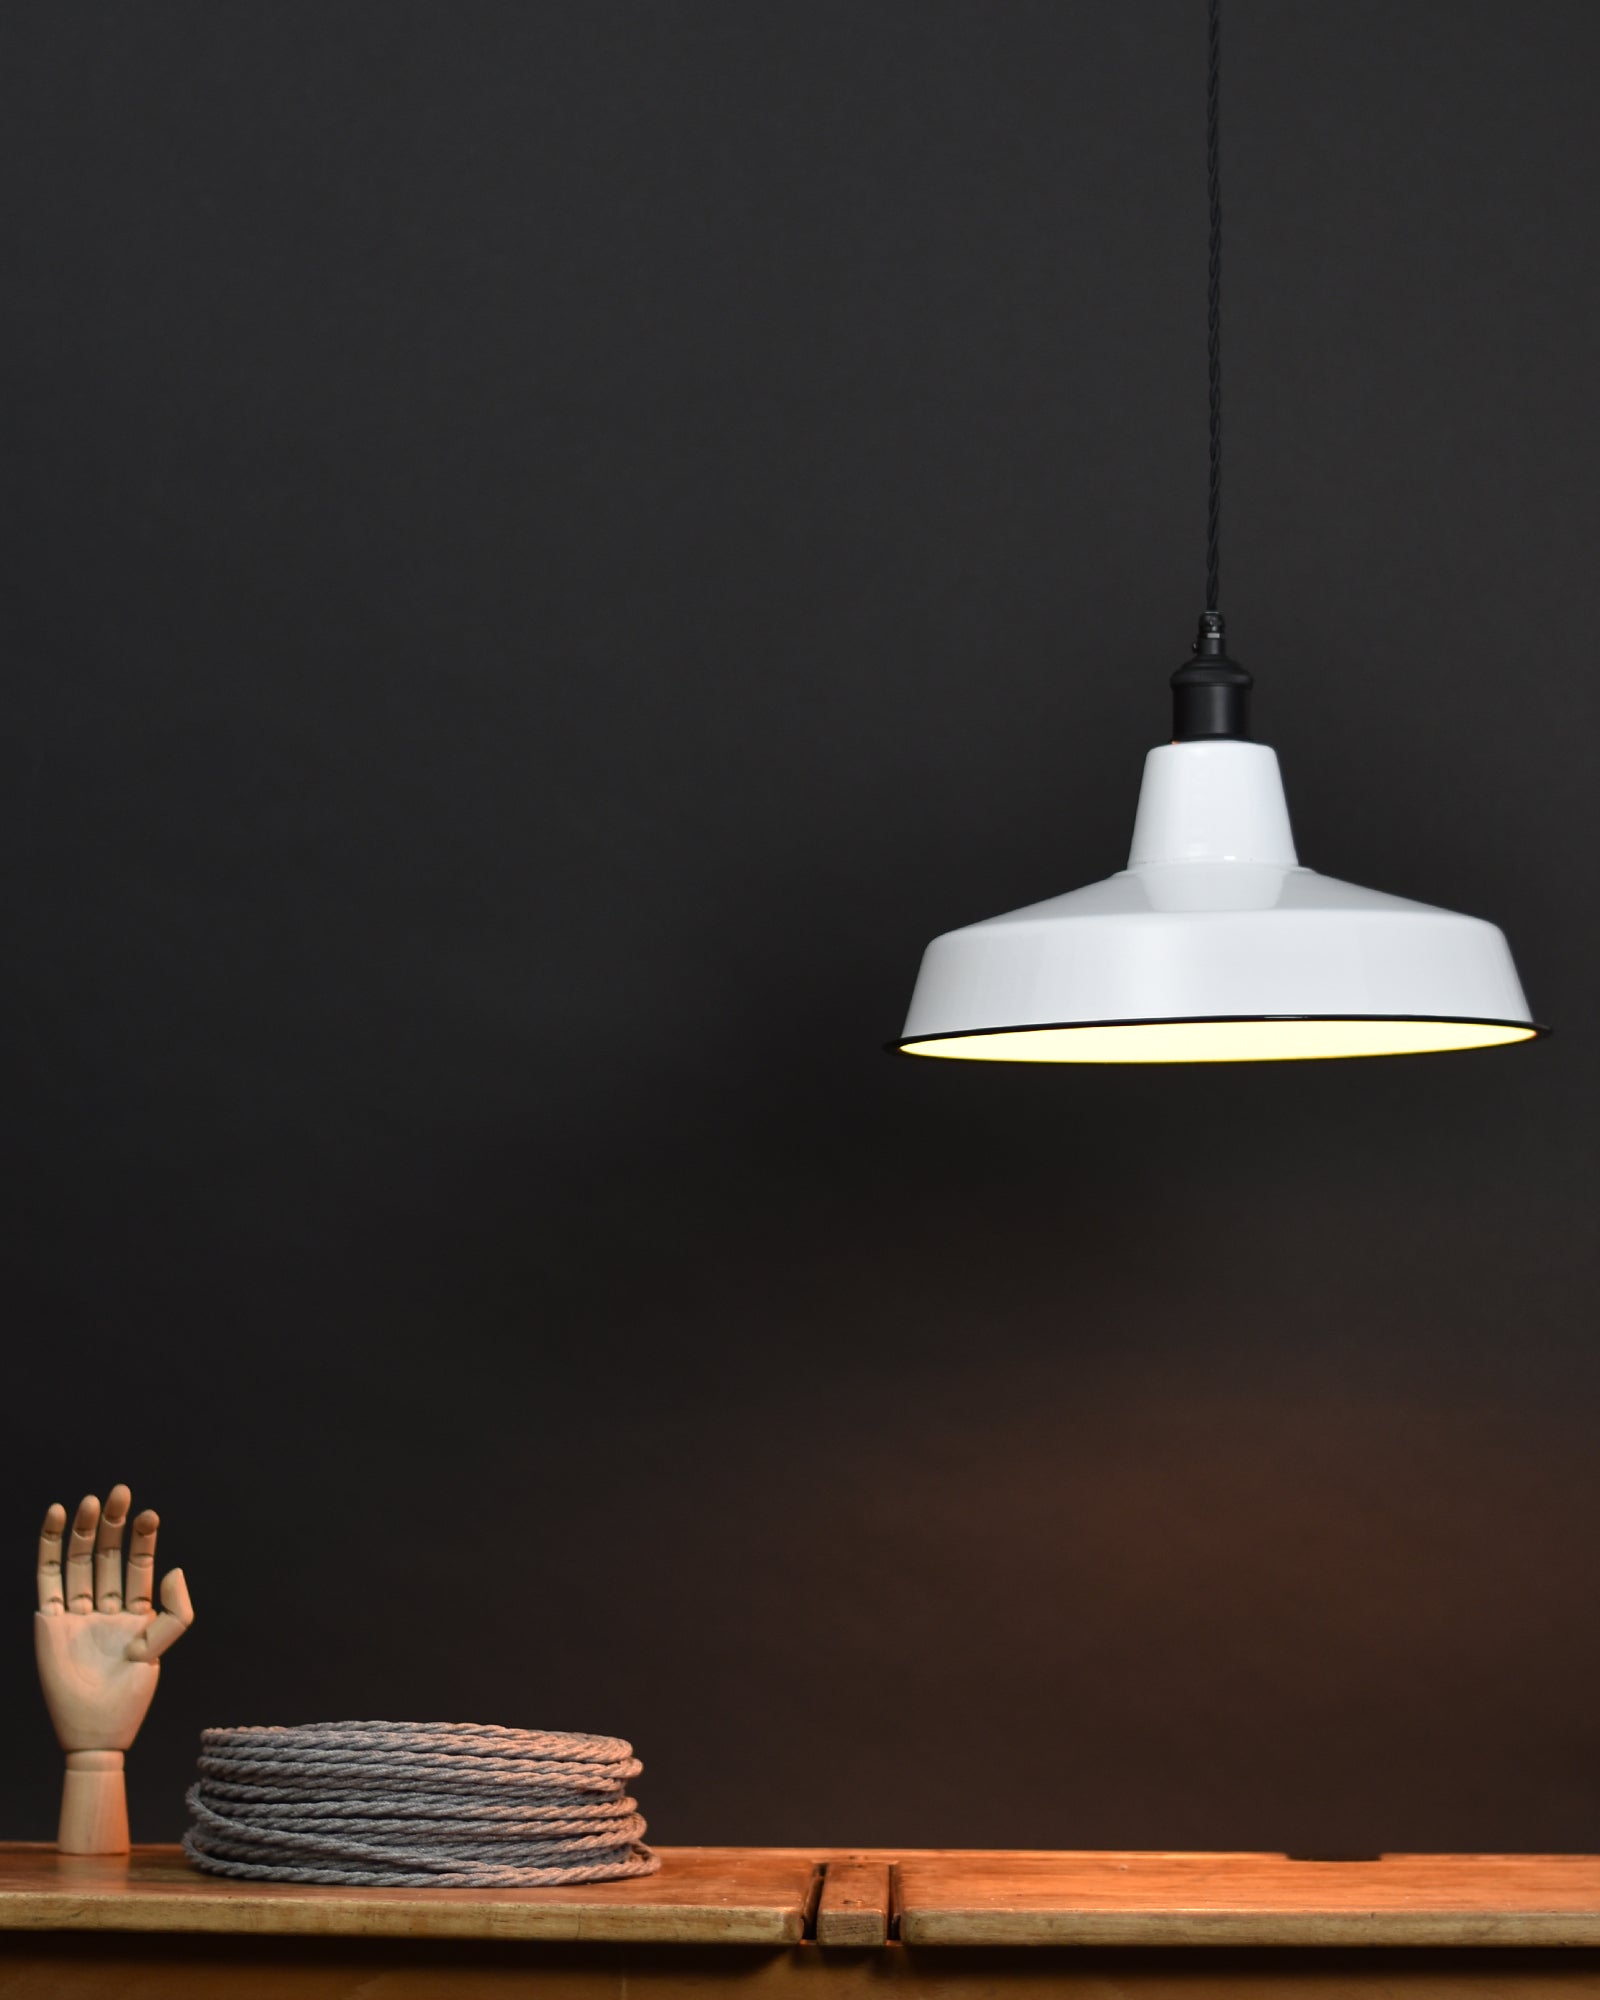 Ceiling Pendant | Industrial | Brilliant White - Vendimia Lighting Co.